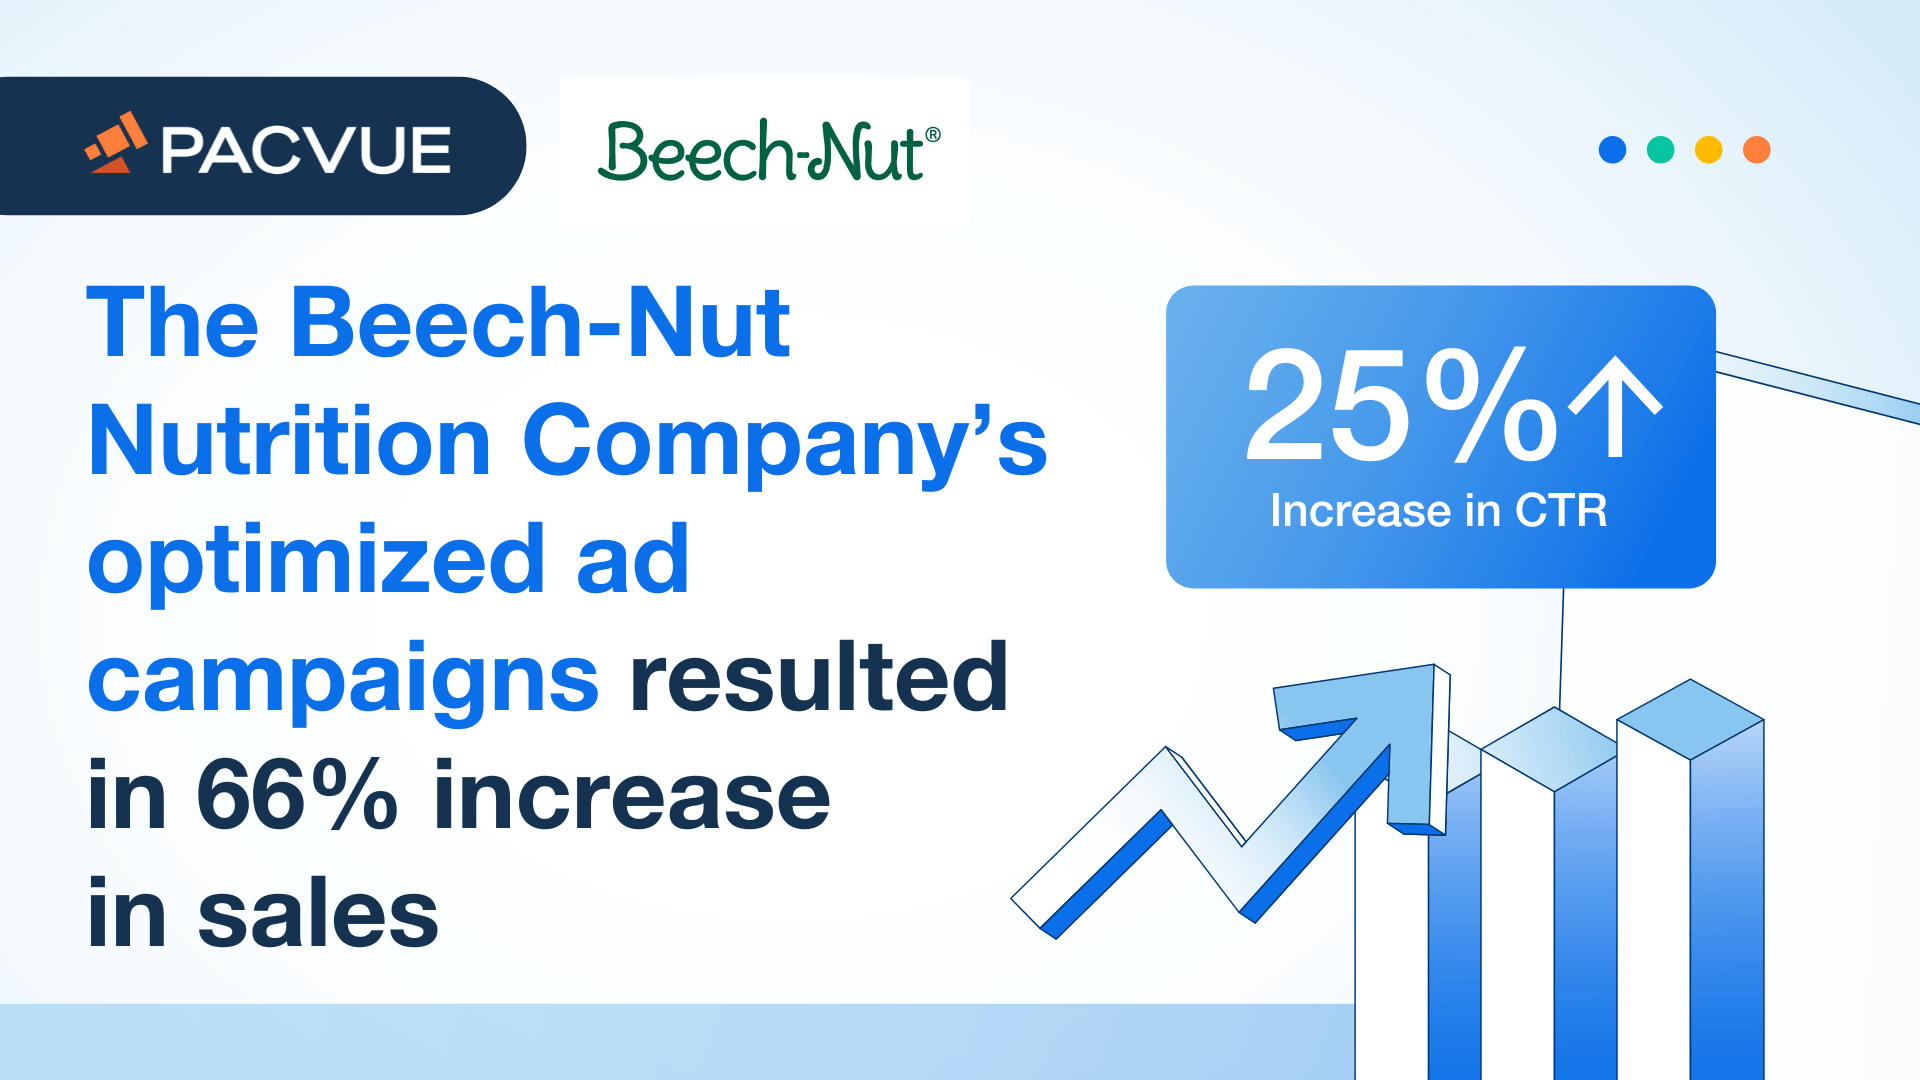 Las campañas publicitarias optimizadas de Beech-Nut Nutrition Company dieron como resultado un aumento del 66% en las ventas.